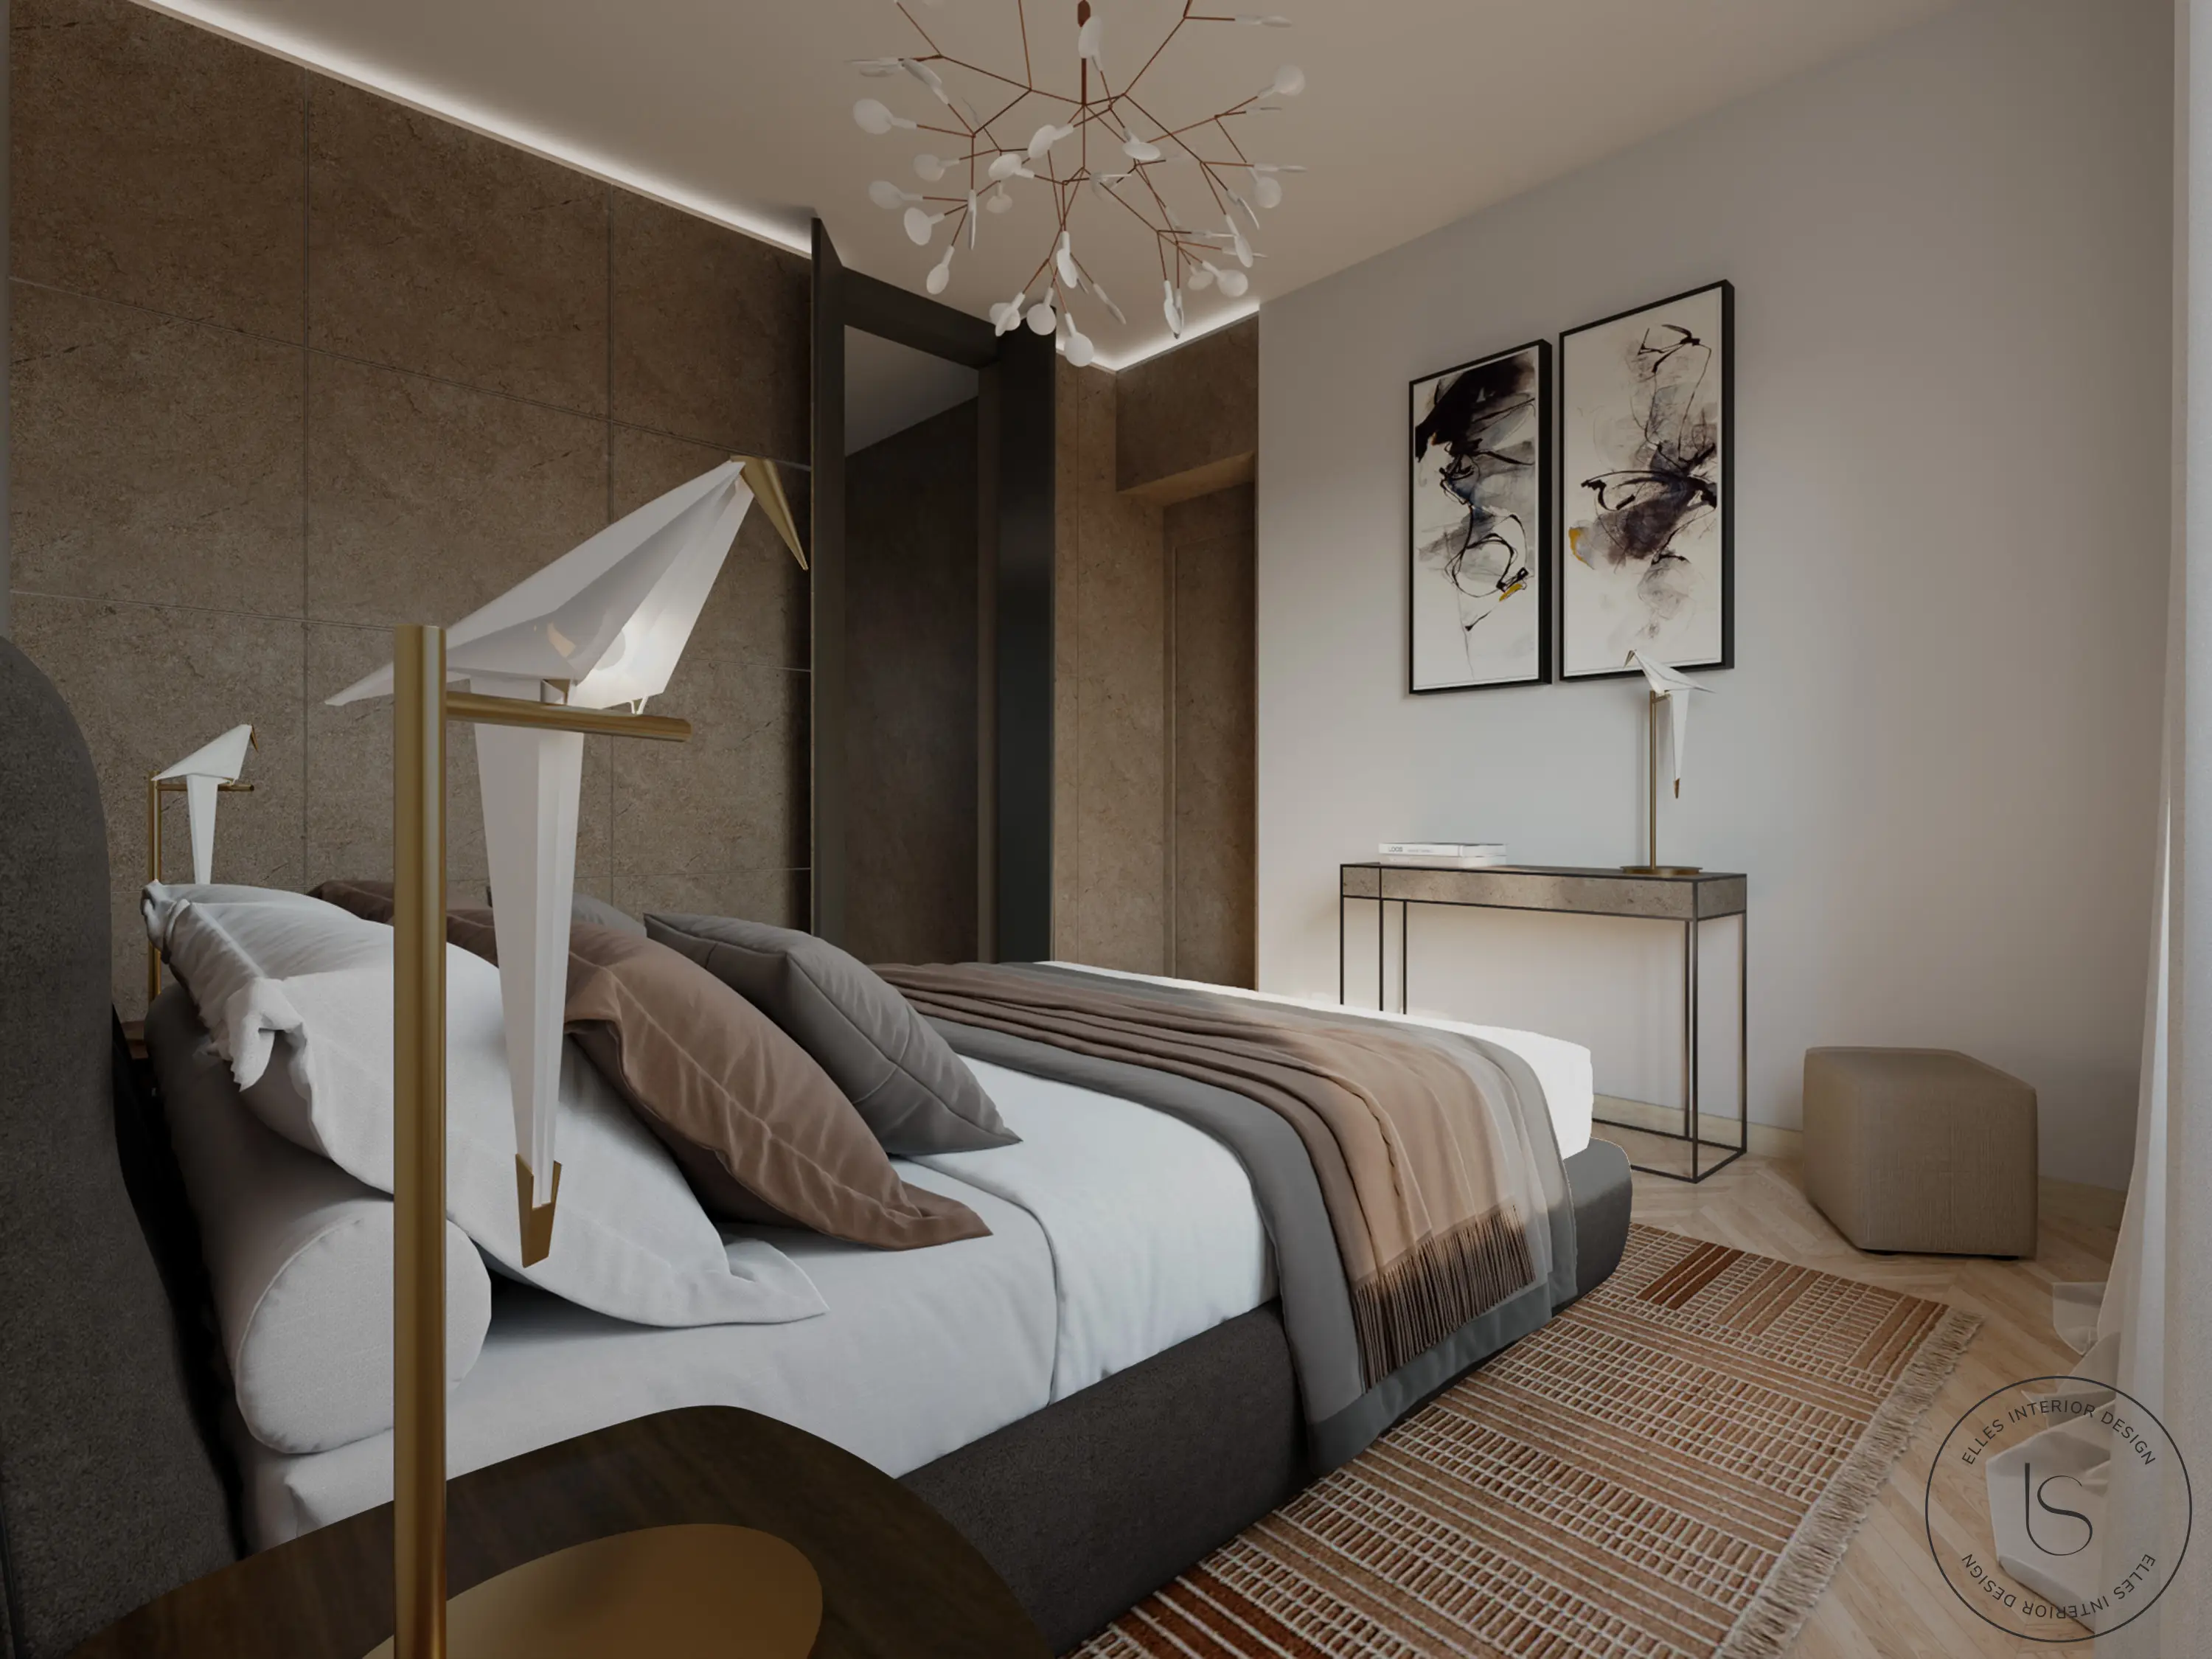 Render fotorealistico camera da letto con cabina armadio accessibile dalla boiserie a muro. Progetto realizzato dallo studio Elles Interior Design